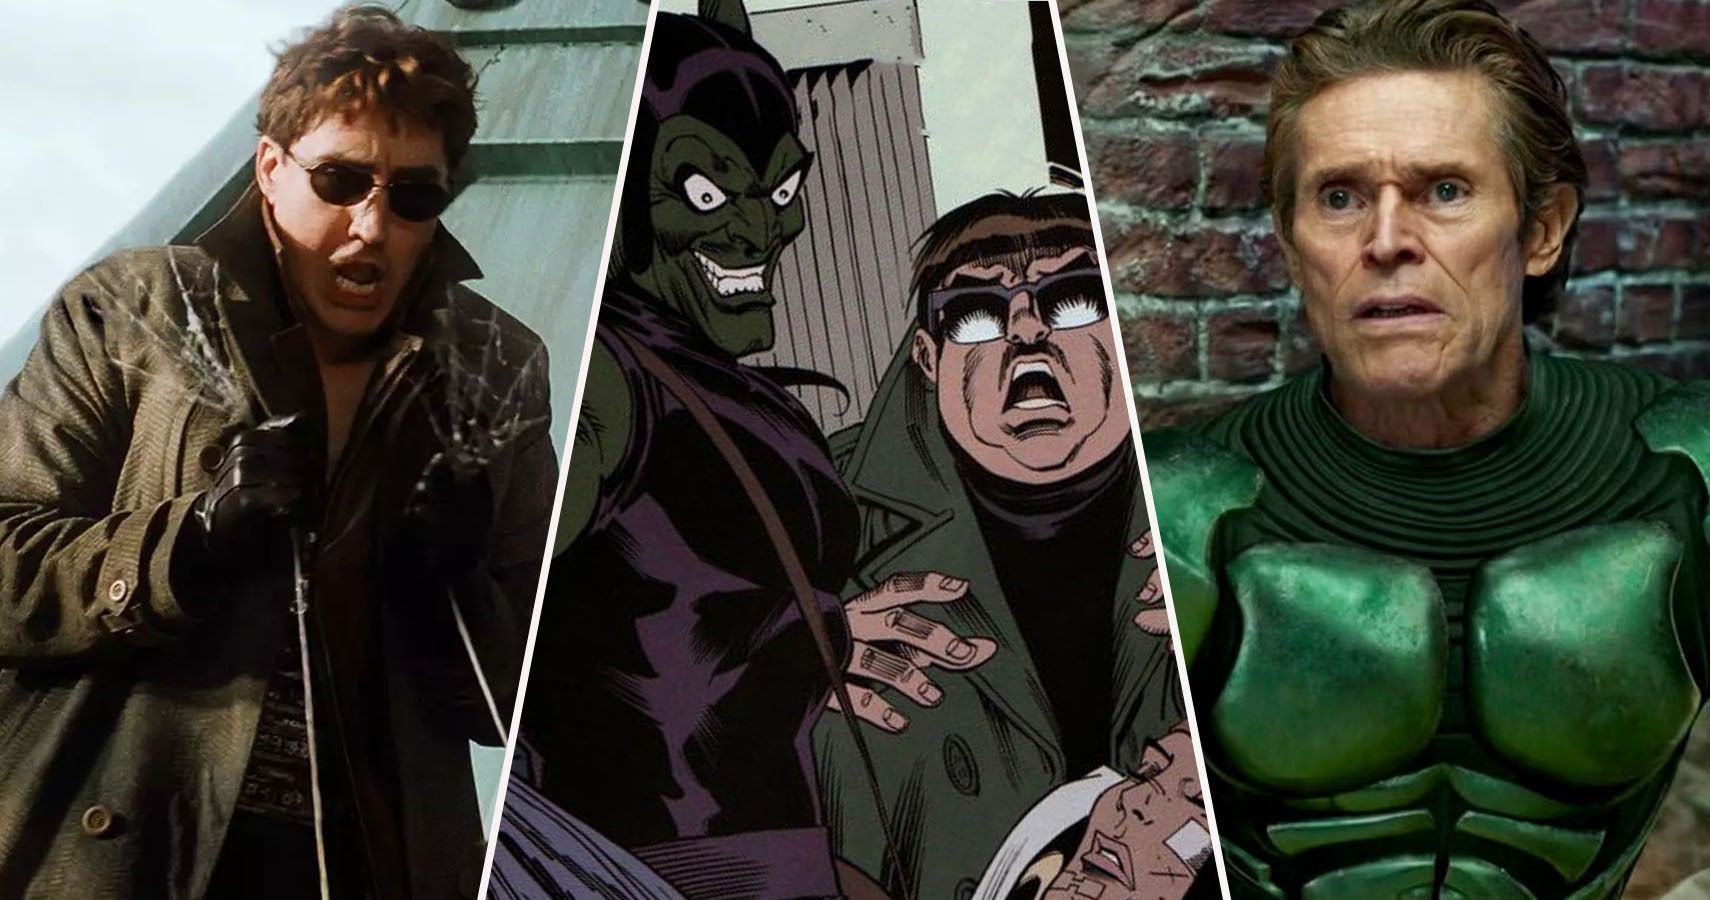 Split image of live-action Doctor Ock, Marvel Comics Green Goblin, and live-action green goblin